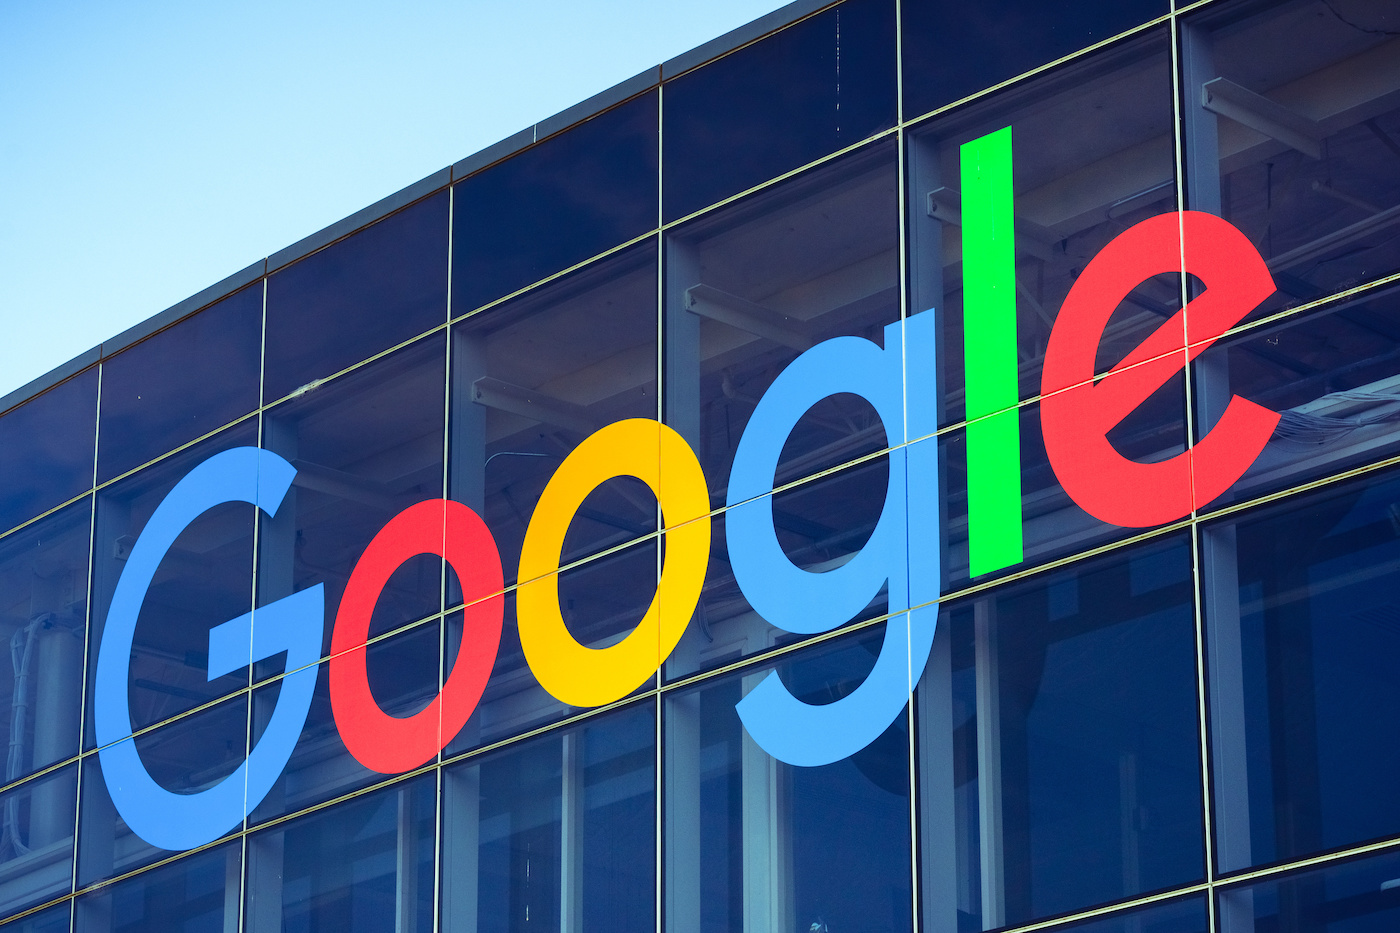 لوگوی گوگل در ساختمانی در محوطه اصلی شرکت، Googleplex.